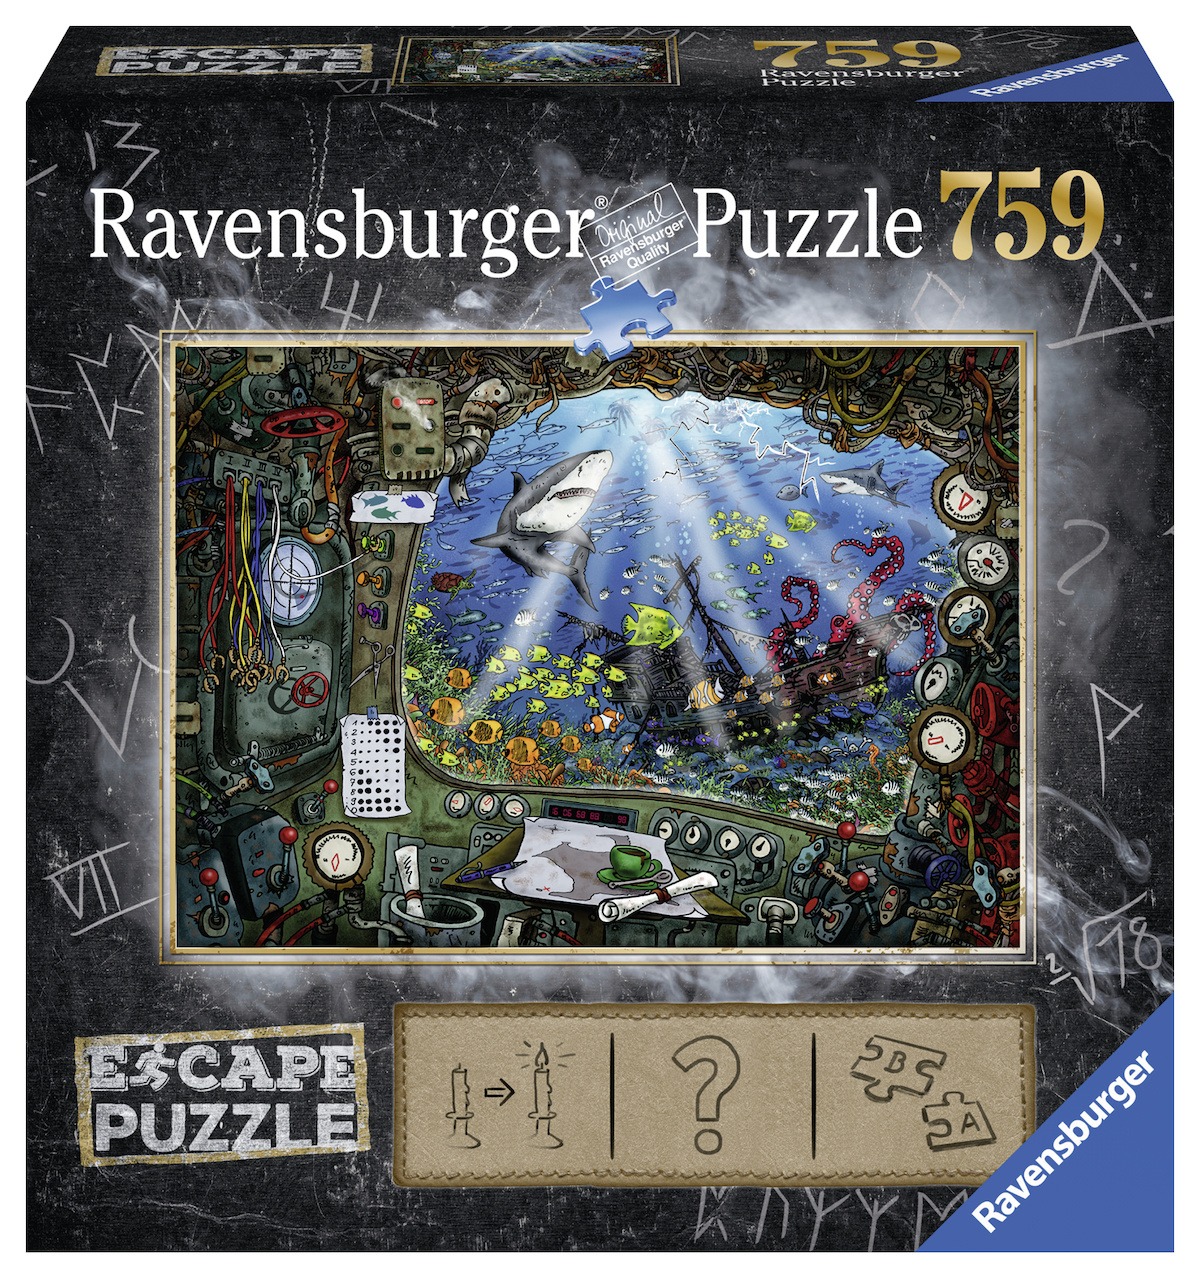 Acheter des Puzzels Ravensburger bon marché? Vaste choix! - Puzzles123